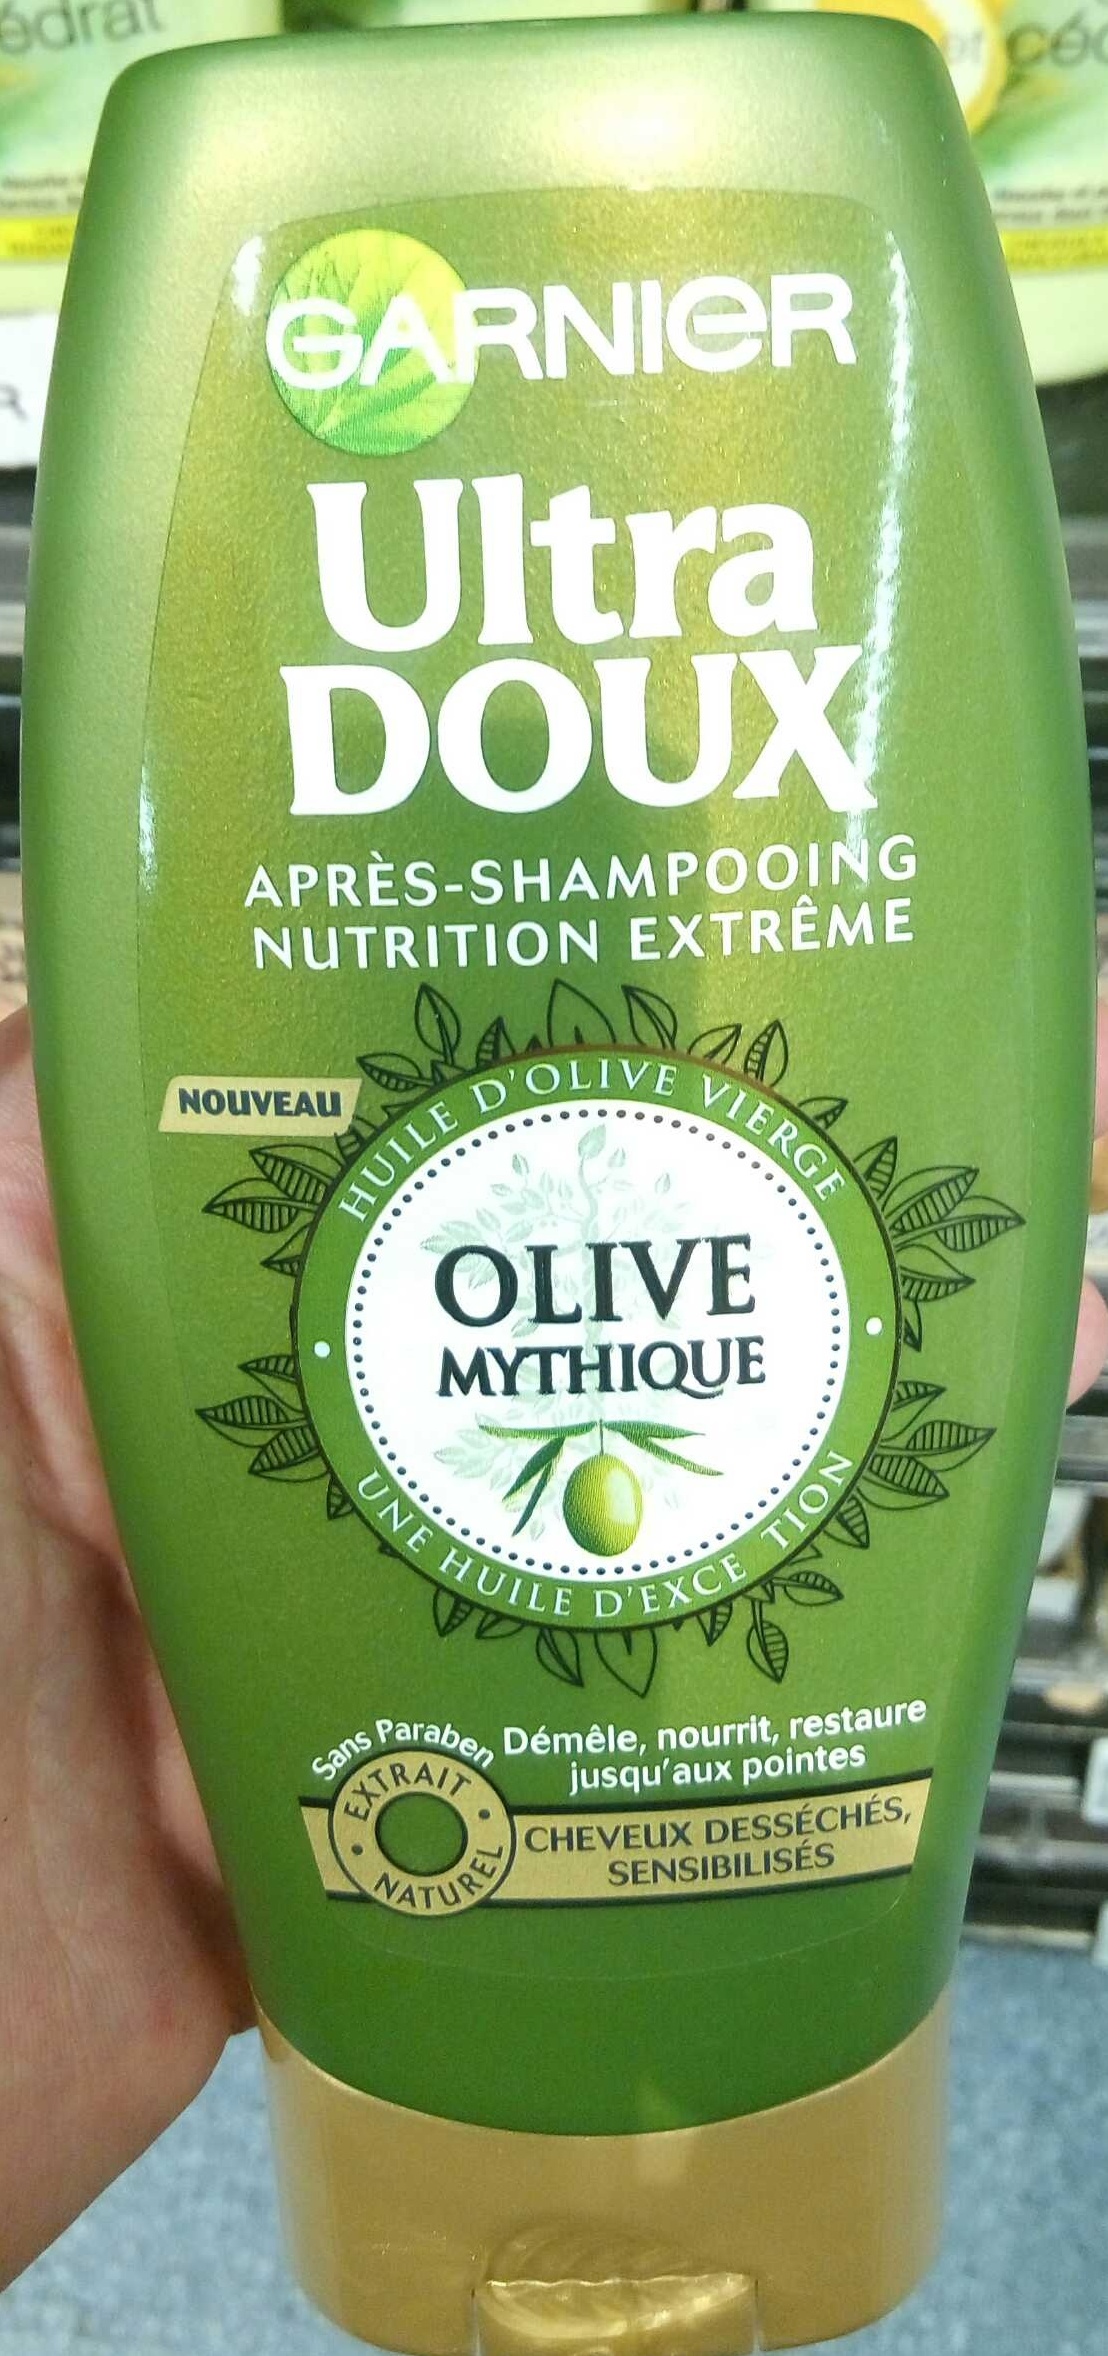 Ultra Doux Après-shampooing Nutrition Extrême Olive Mythique - Product - fr